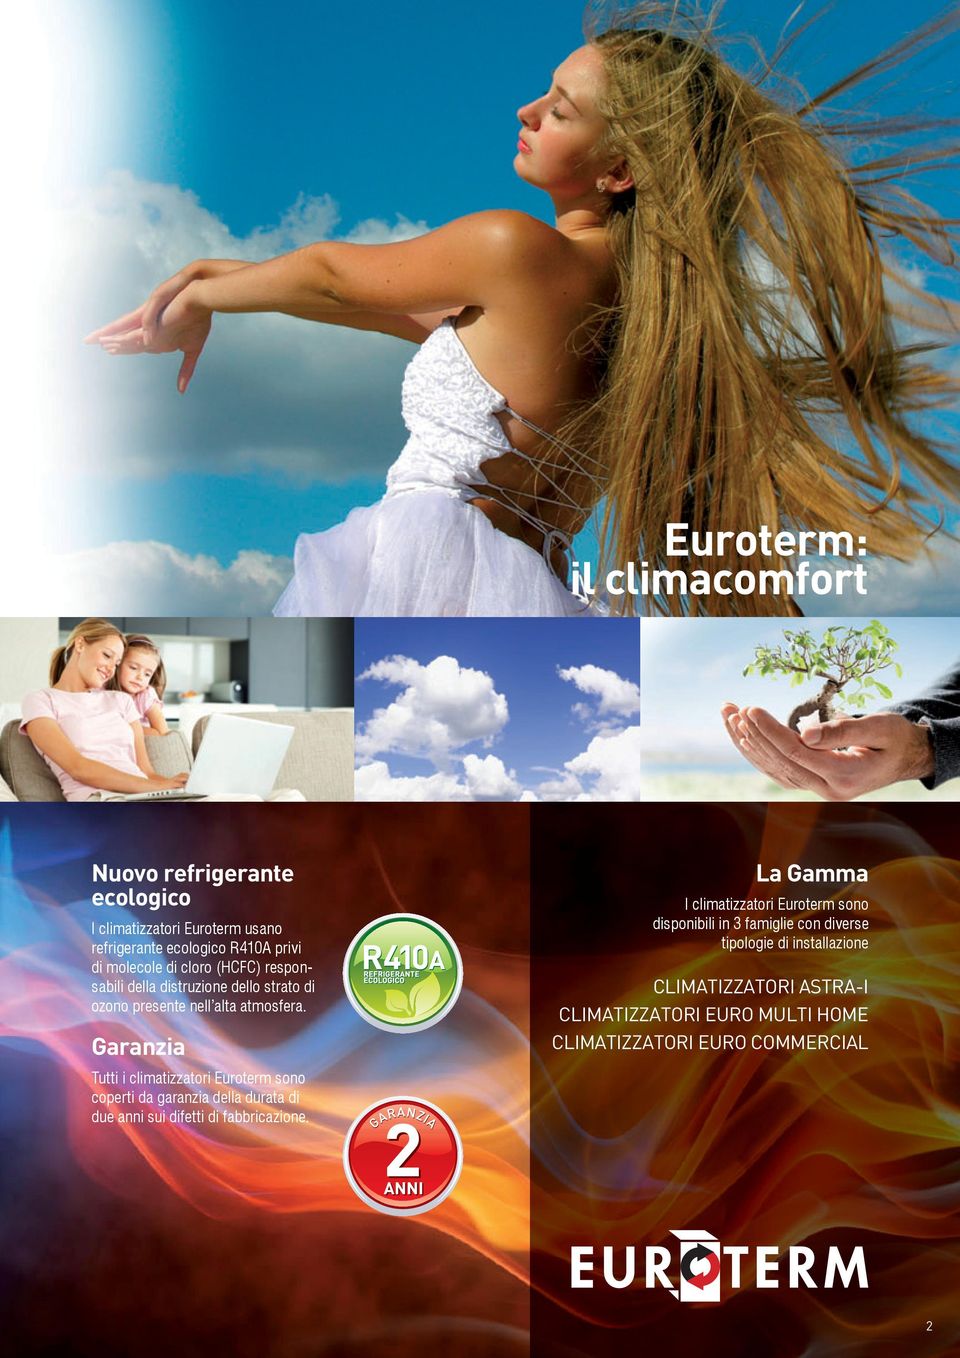 Garanzia Tutti i climatizzatori Euroterm sono coperti da garanzia della durata di due anni sui difetti di fabbricazione.